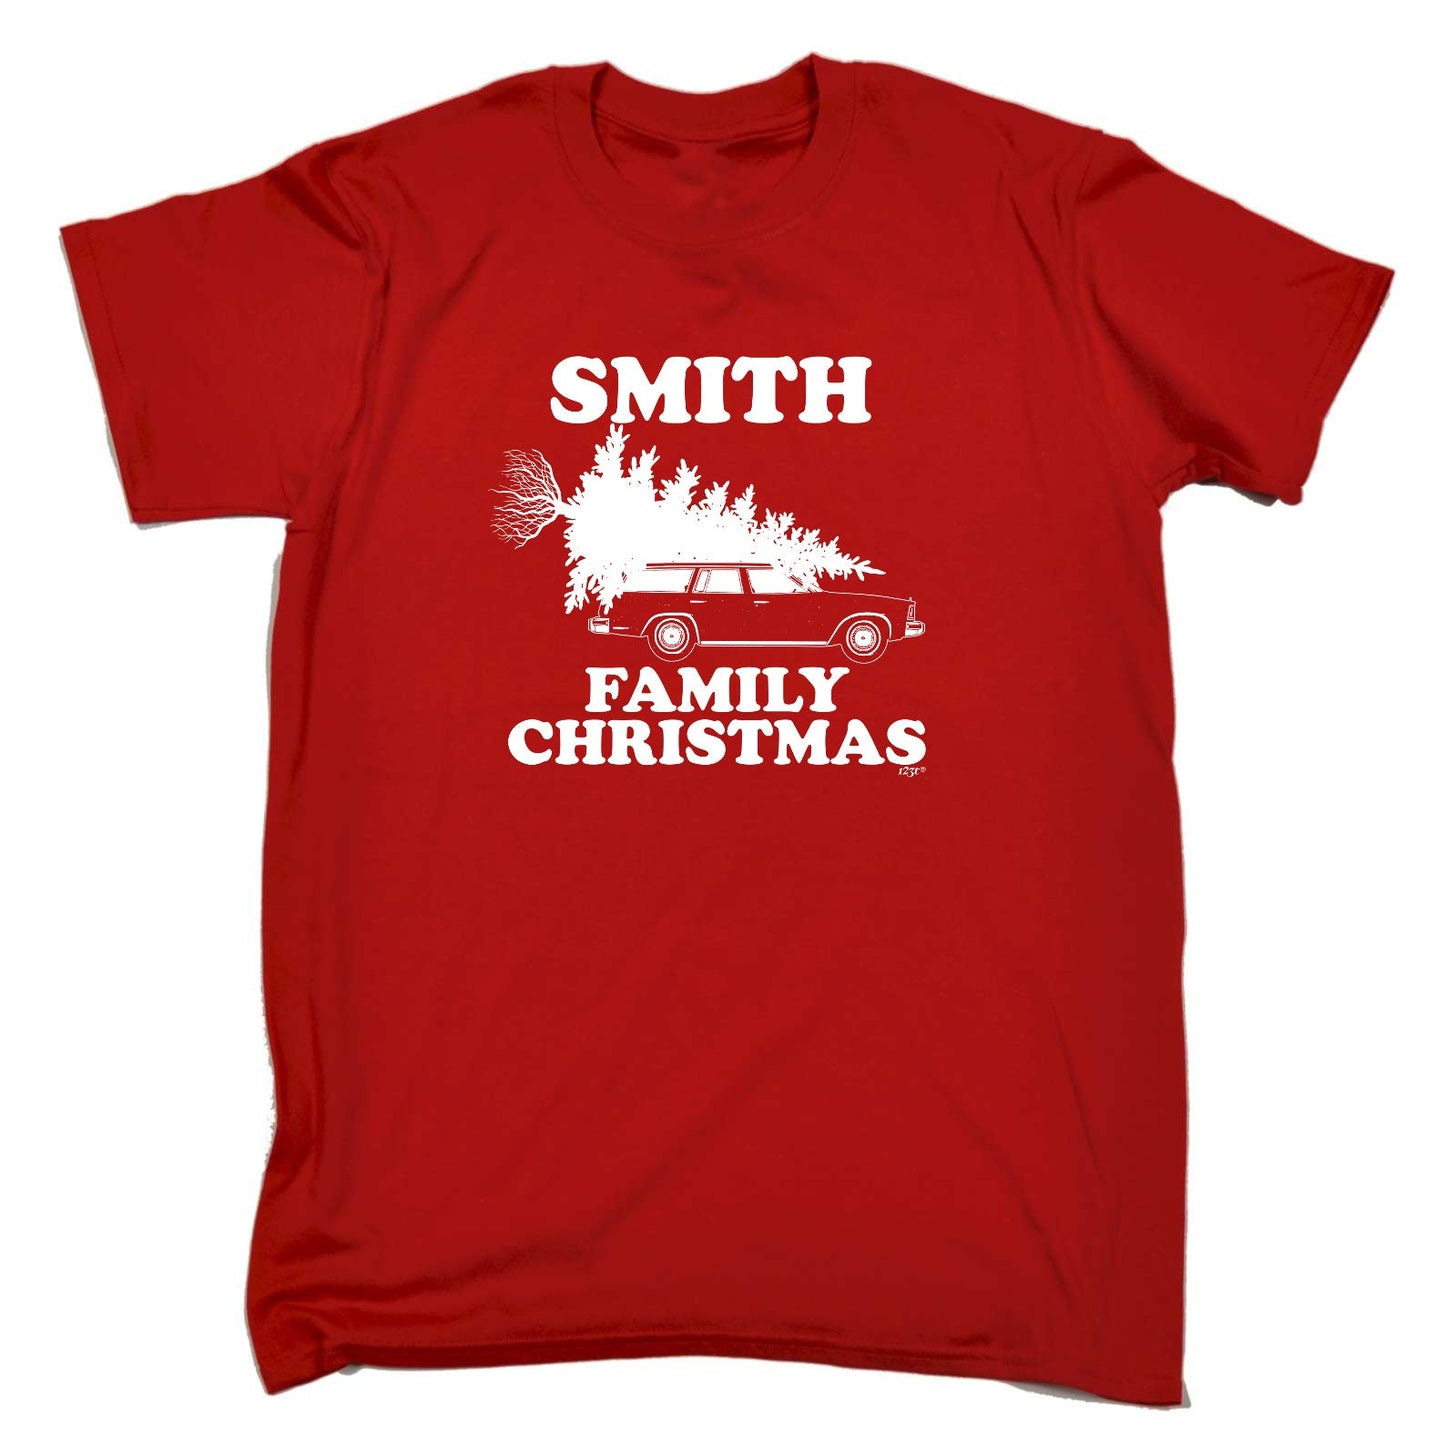 Family Christmas Smith - Mens Xmas Novelty T-Shirt / T Shirt